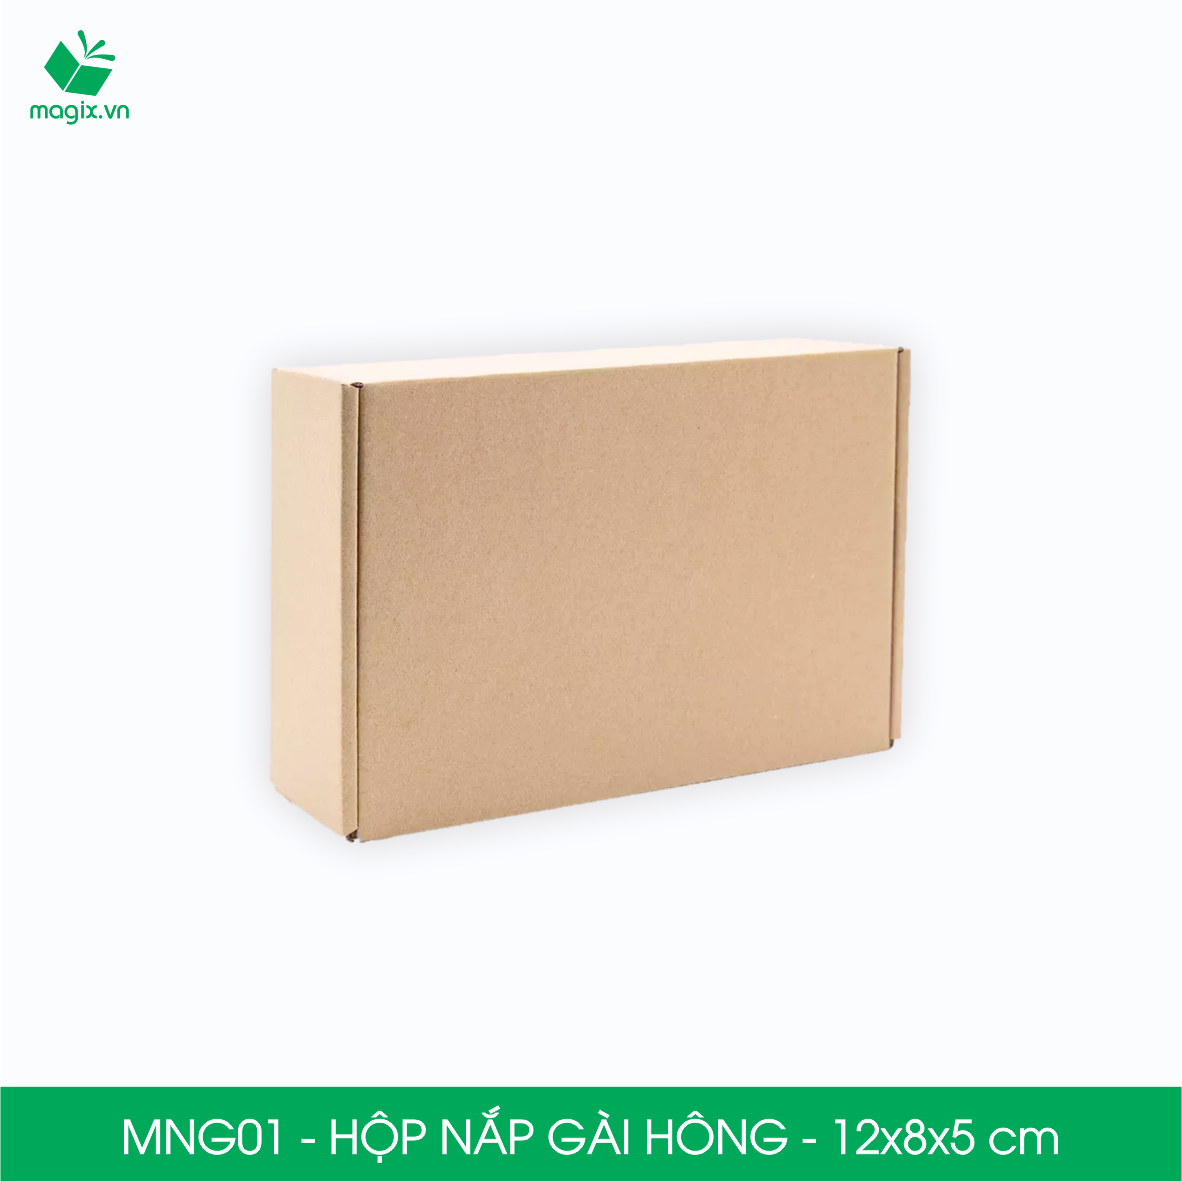 Hình ảnh MNG01 - 12x8x5cm - Combo 20 hộp nắp gài hông - Thùng carton đóng hàng